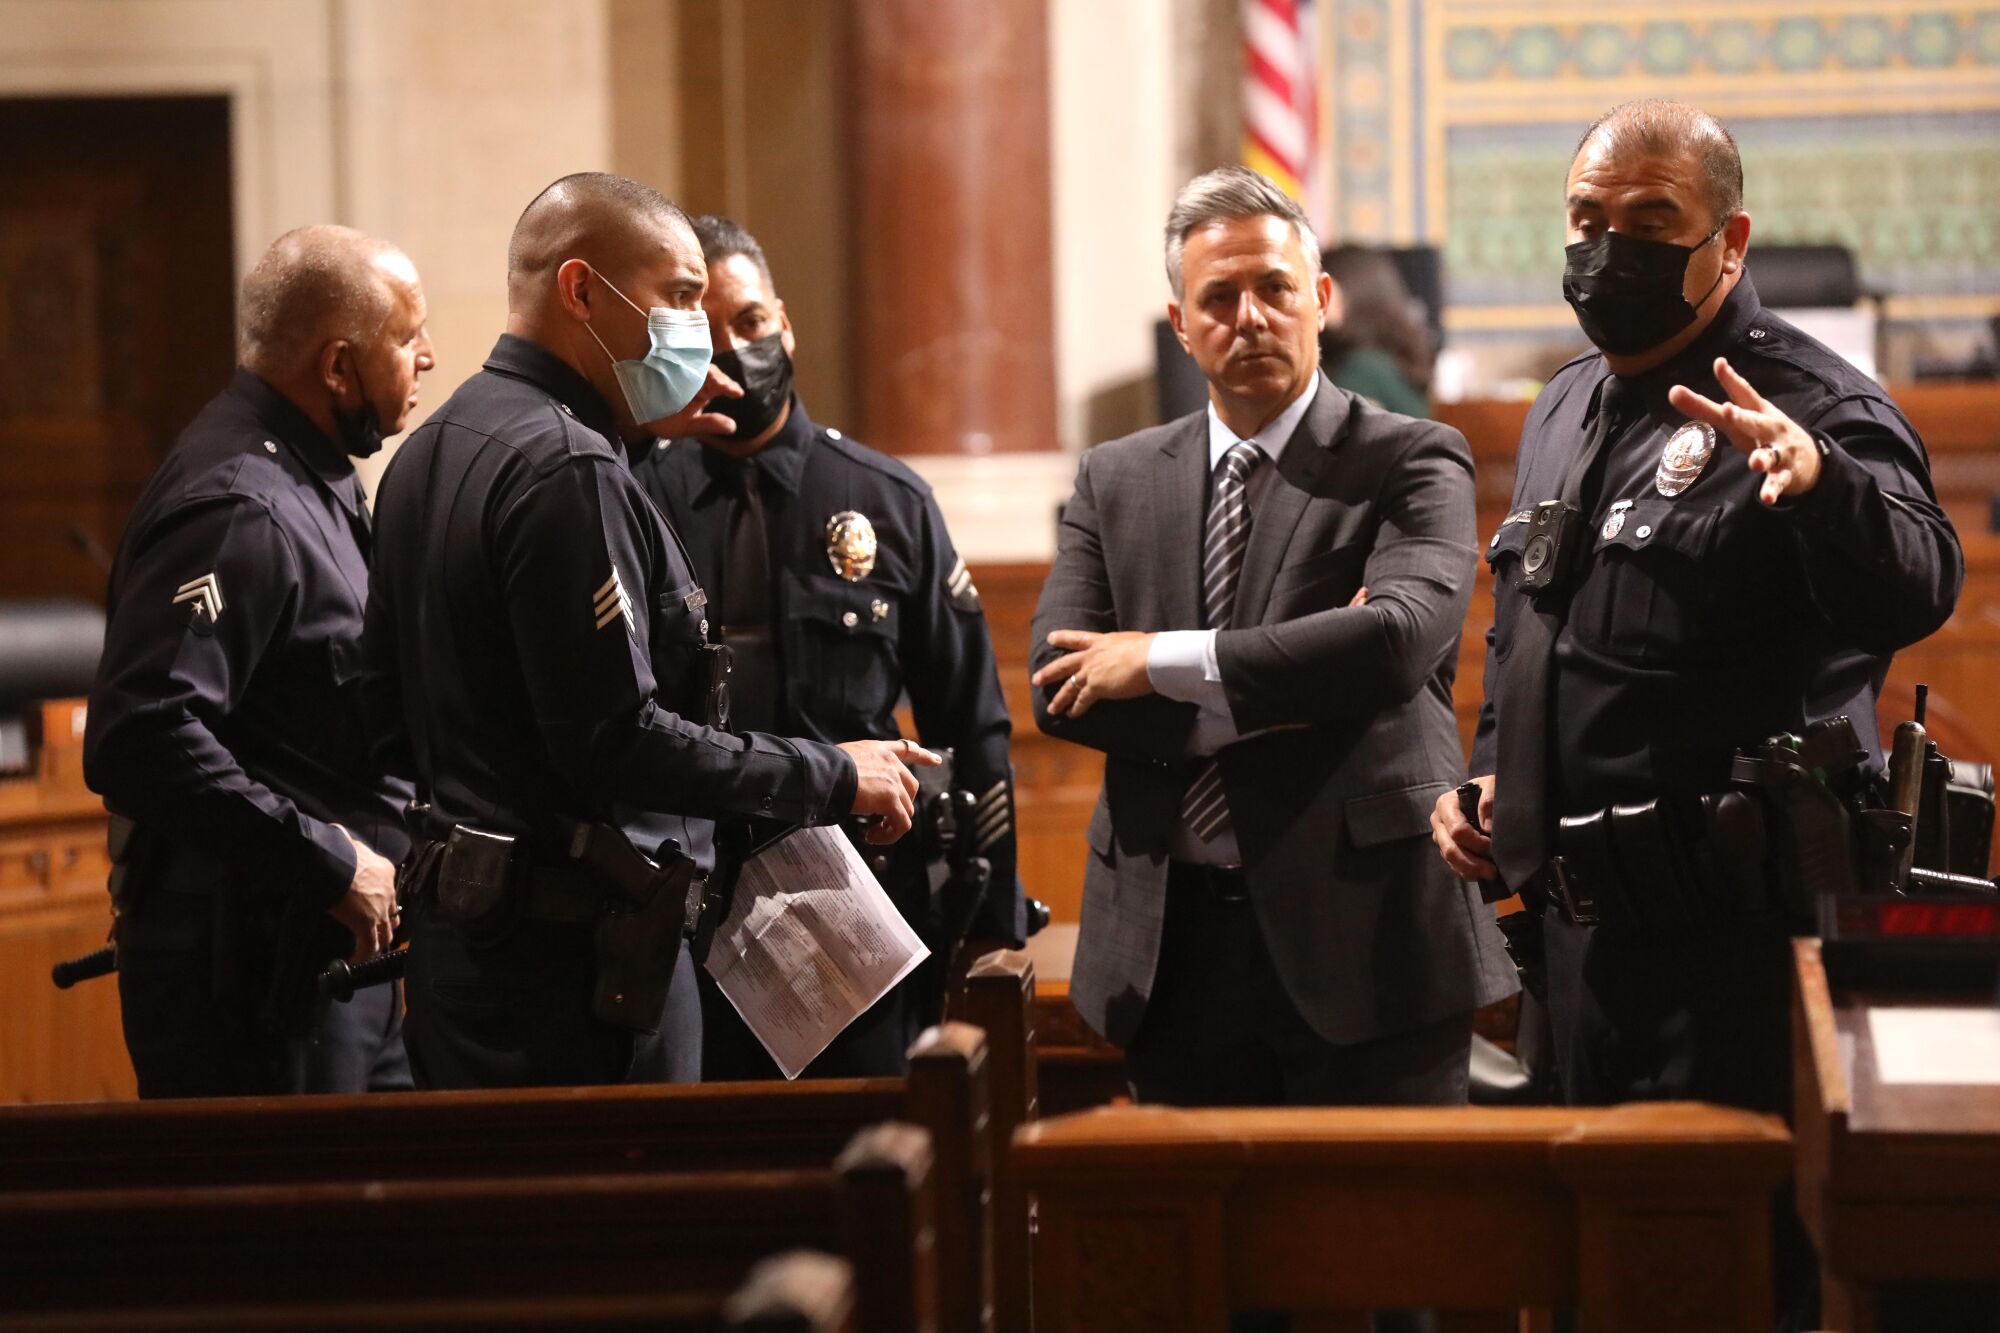 Los Angeles City Councilman Joe Buscaino confers with police